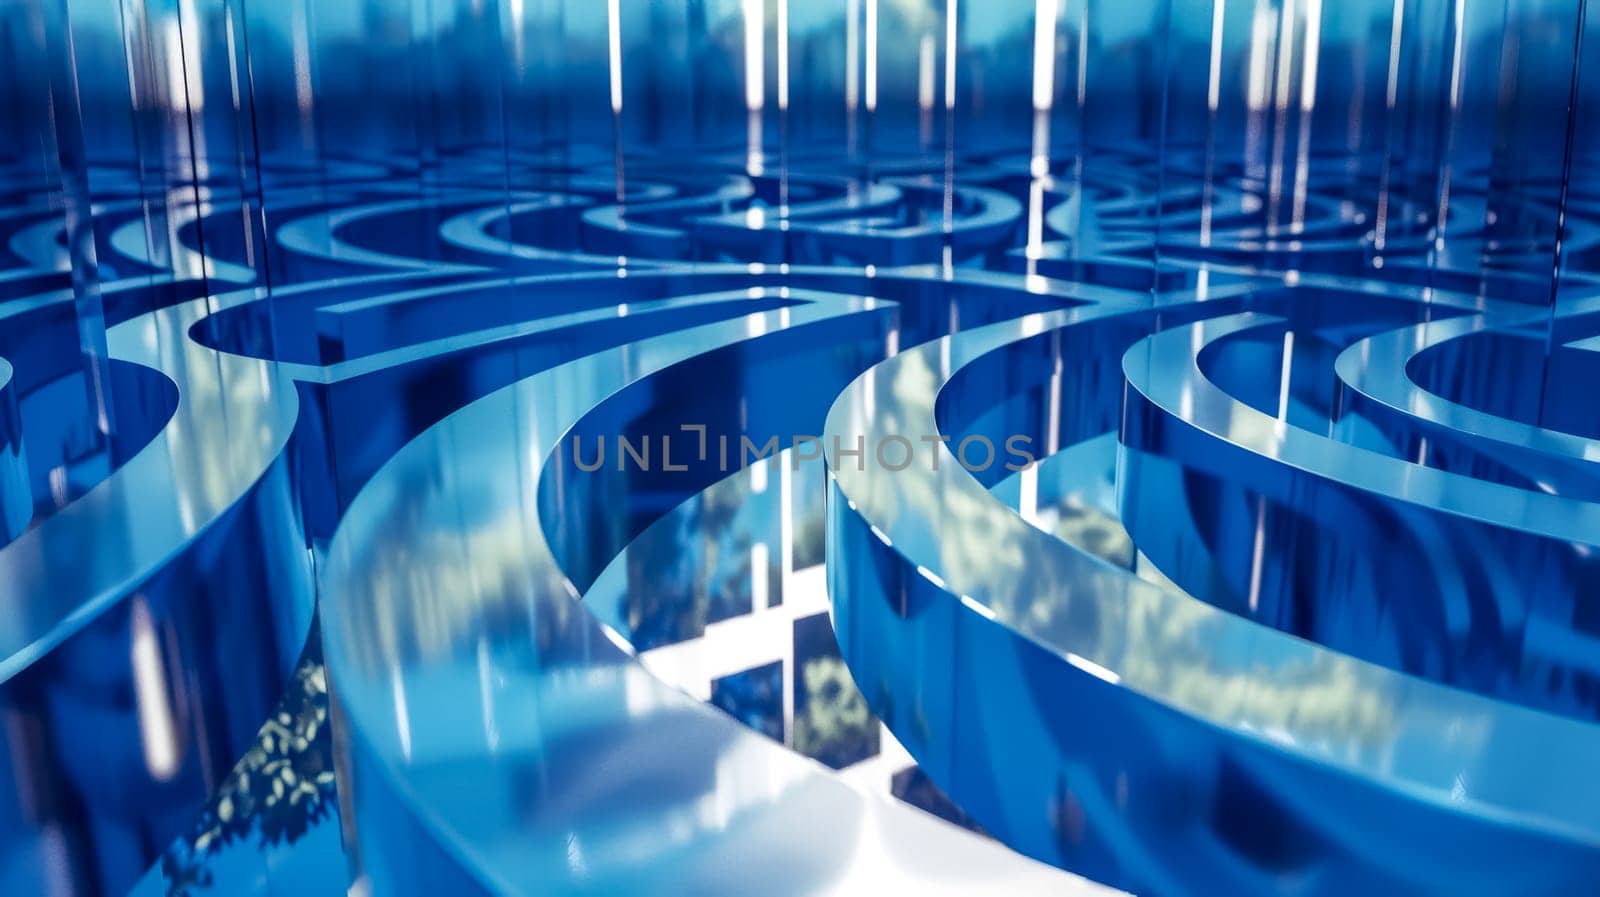 Futuristic blue maze interior design by Edophoto